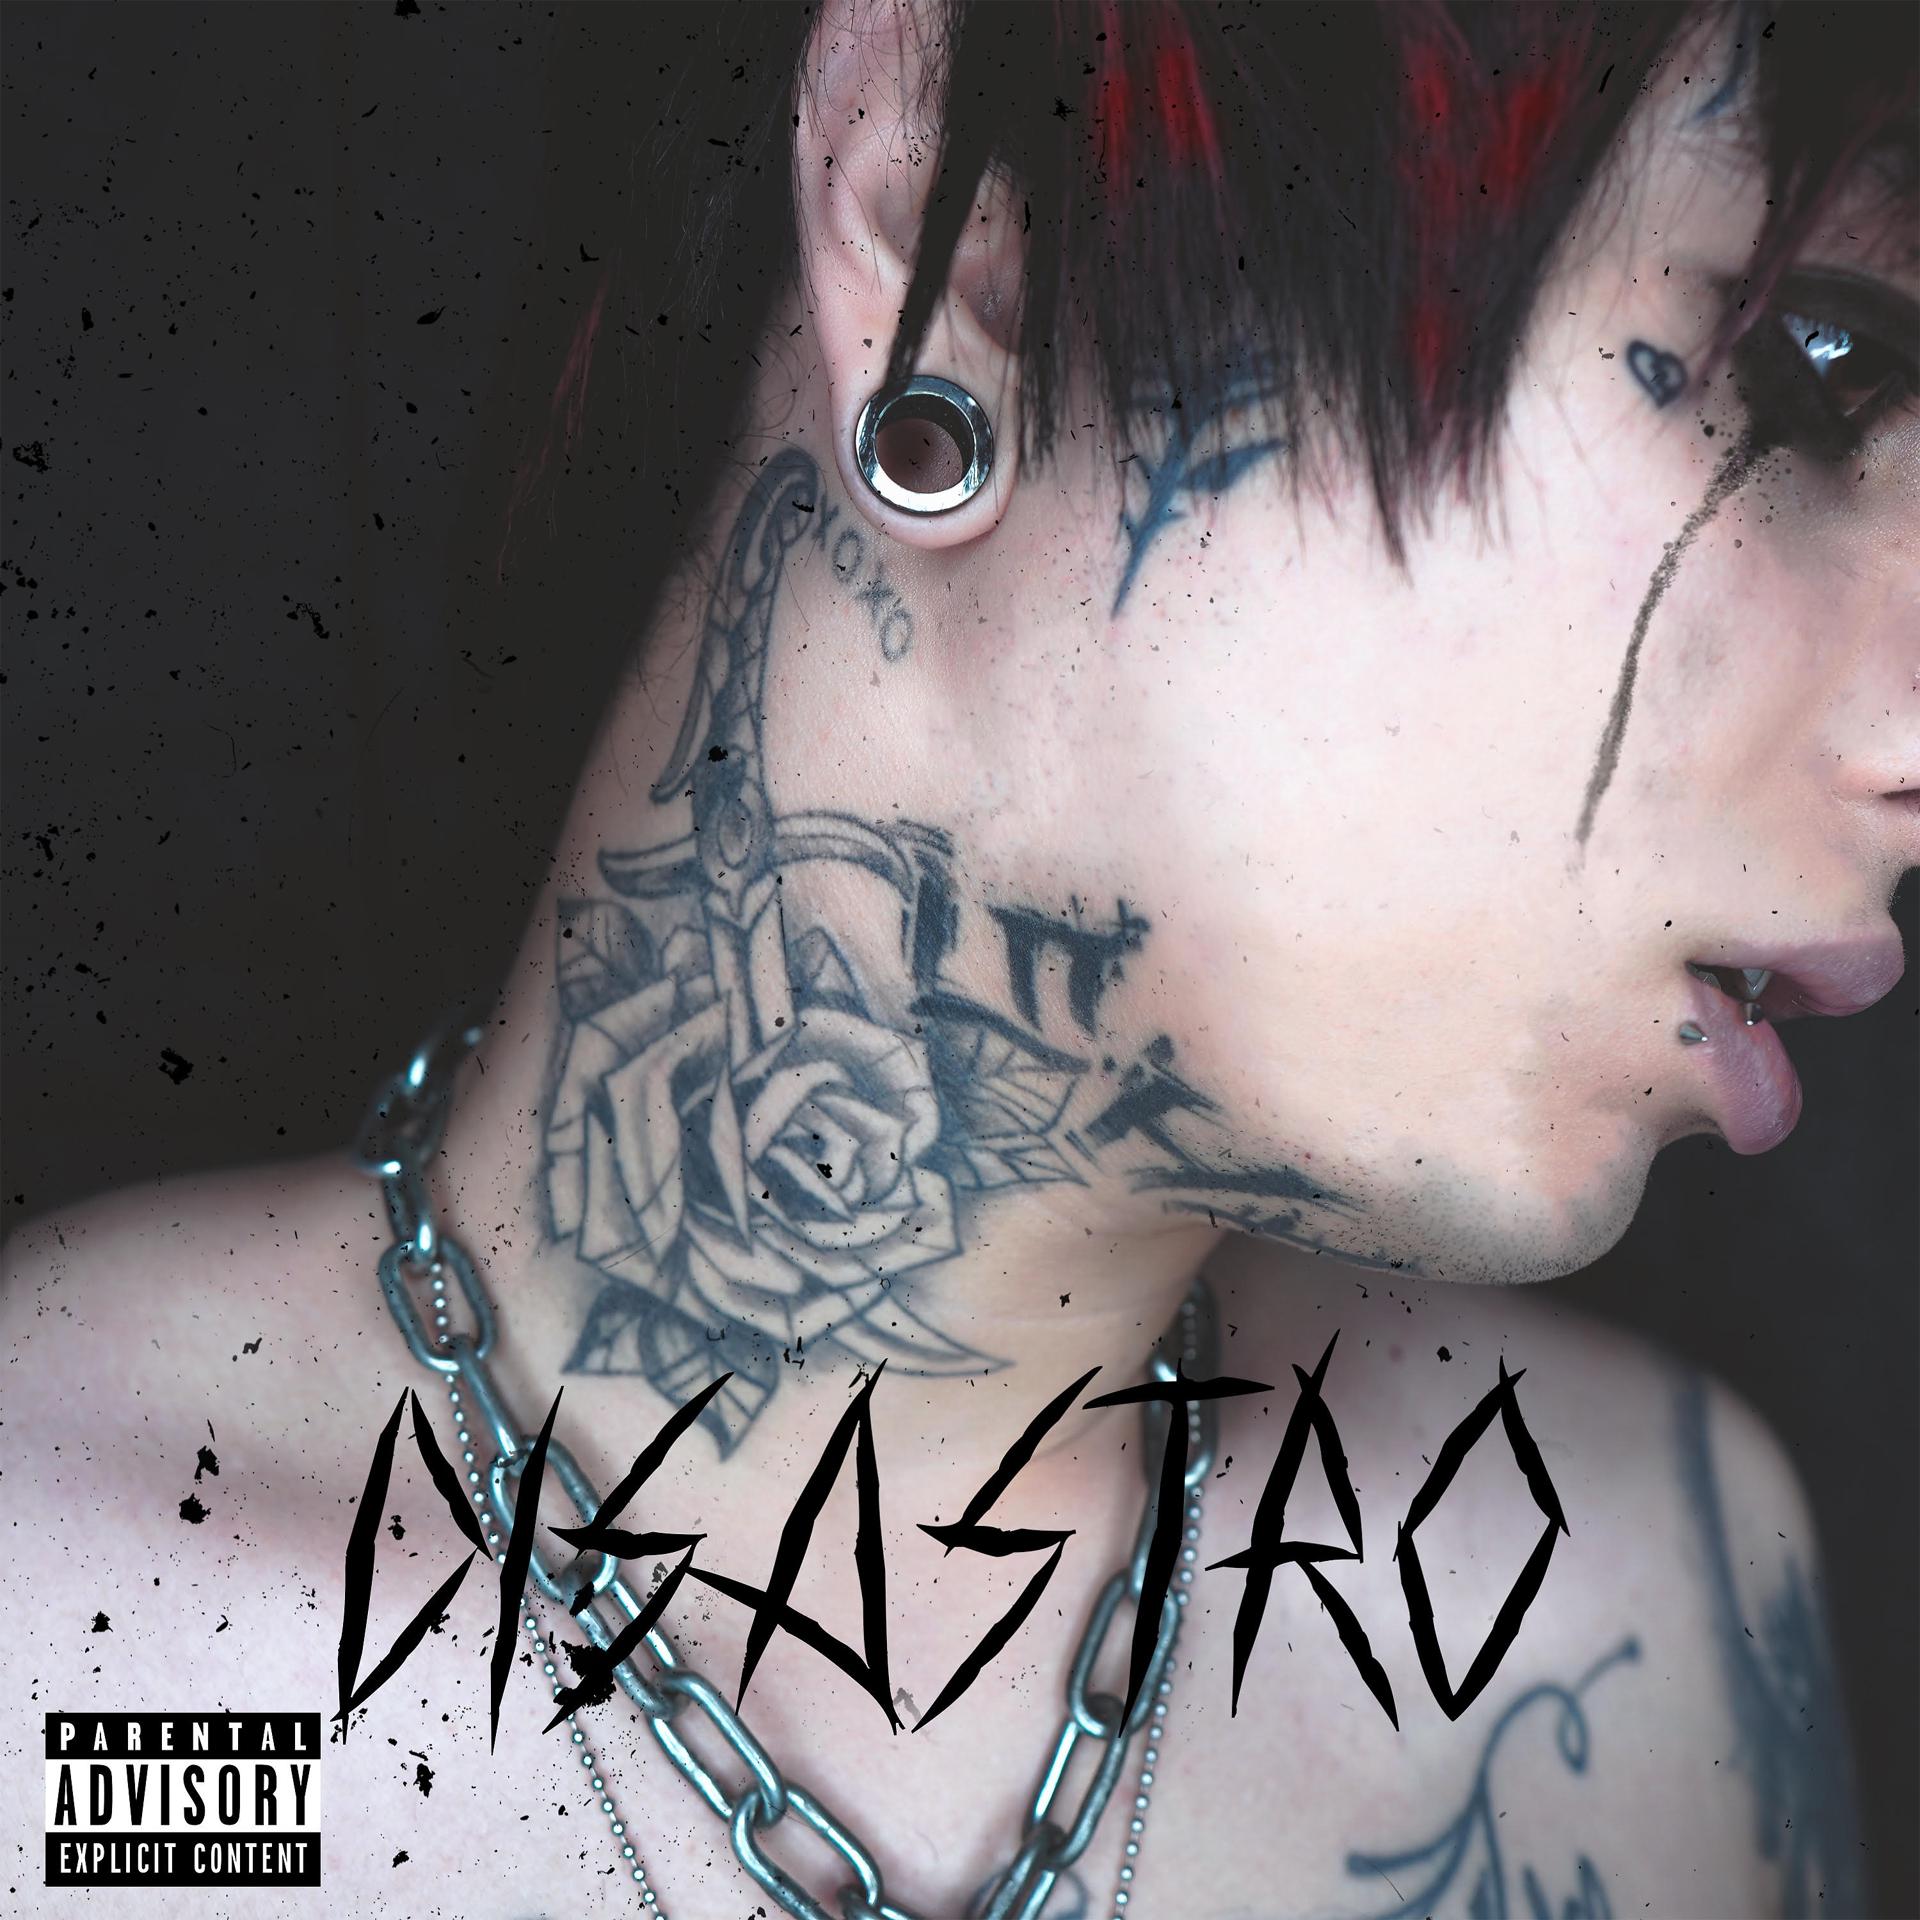 Постер альбома Disastro